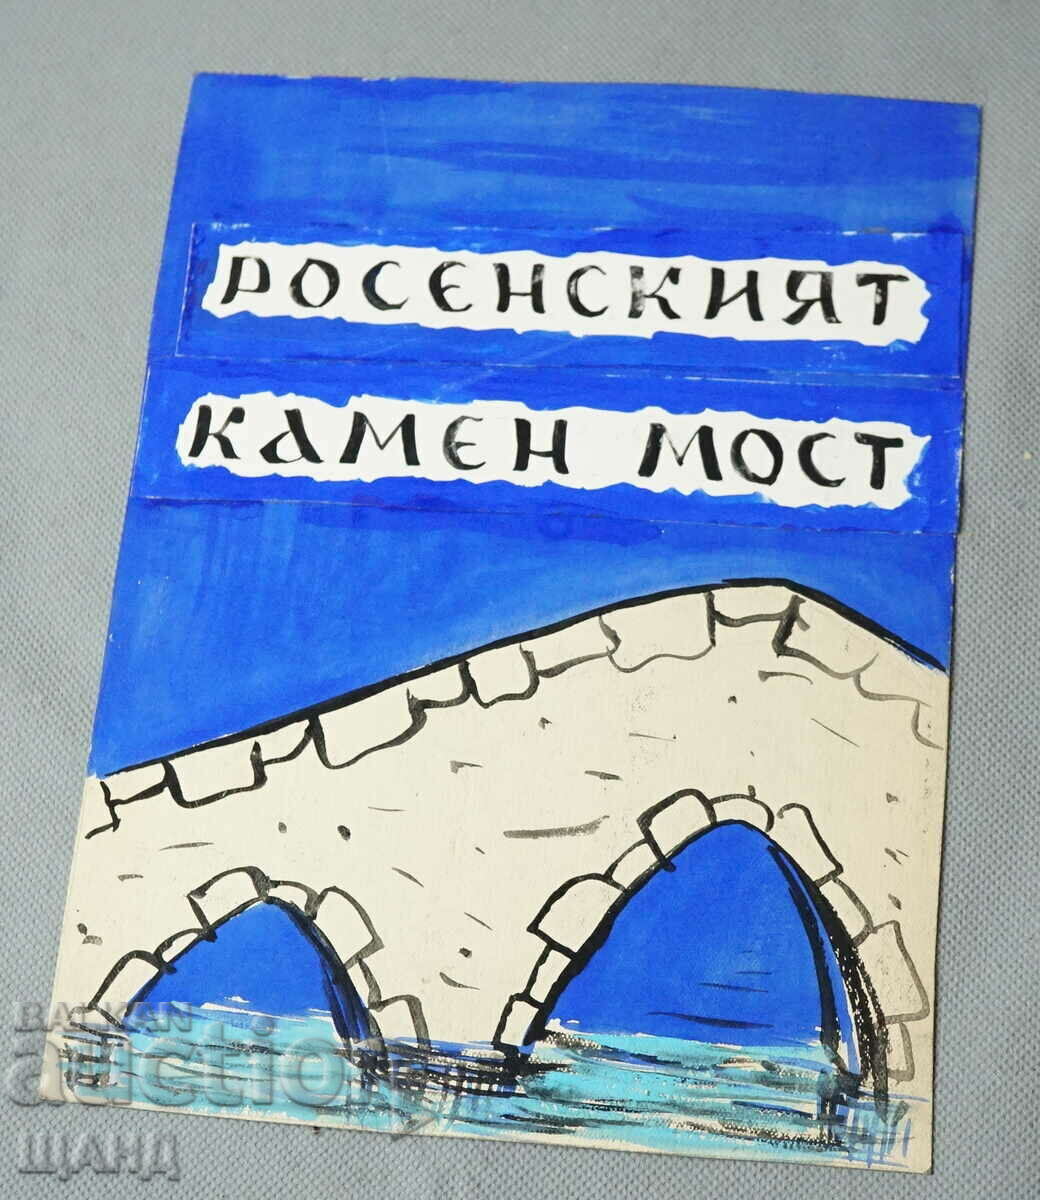 Παλιό ζωγραφισμένο preokt για ένα βιβλίο Angel Karaliychev Kamen most